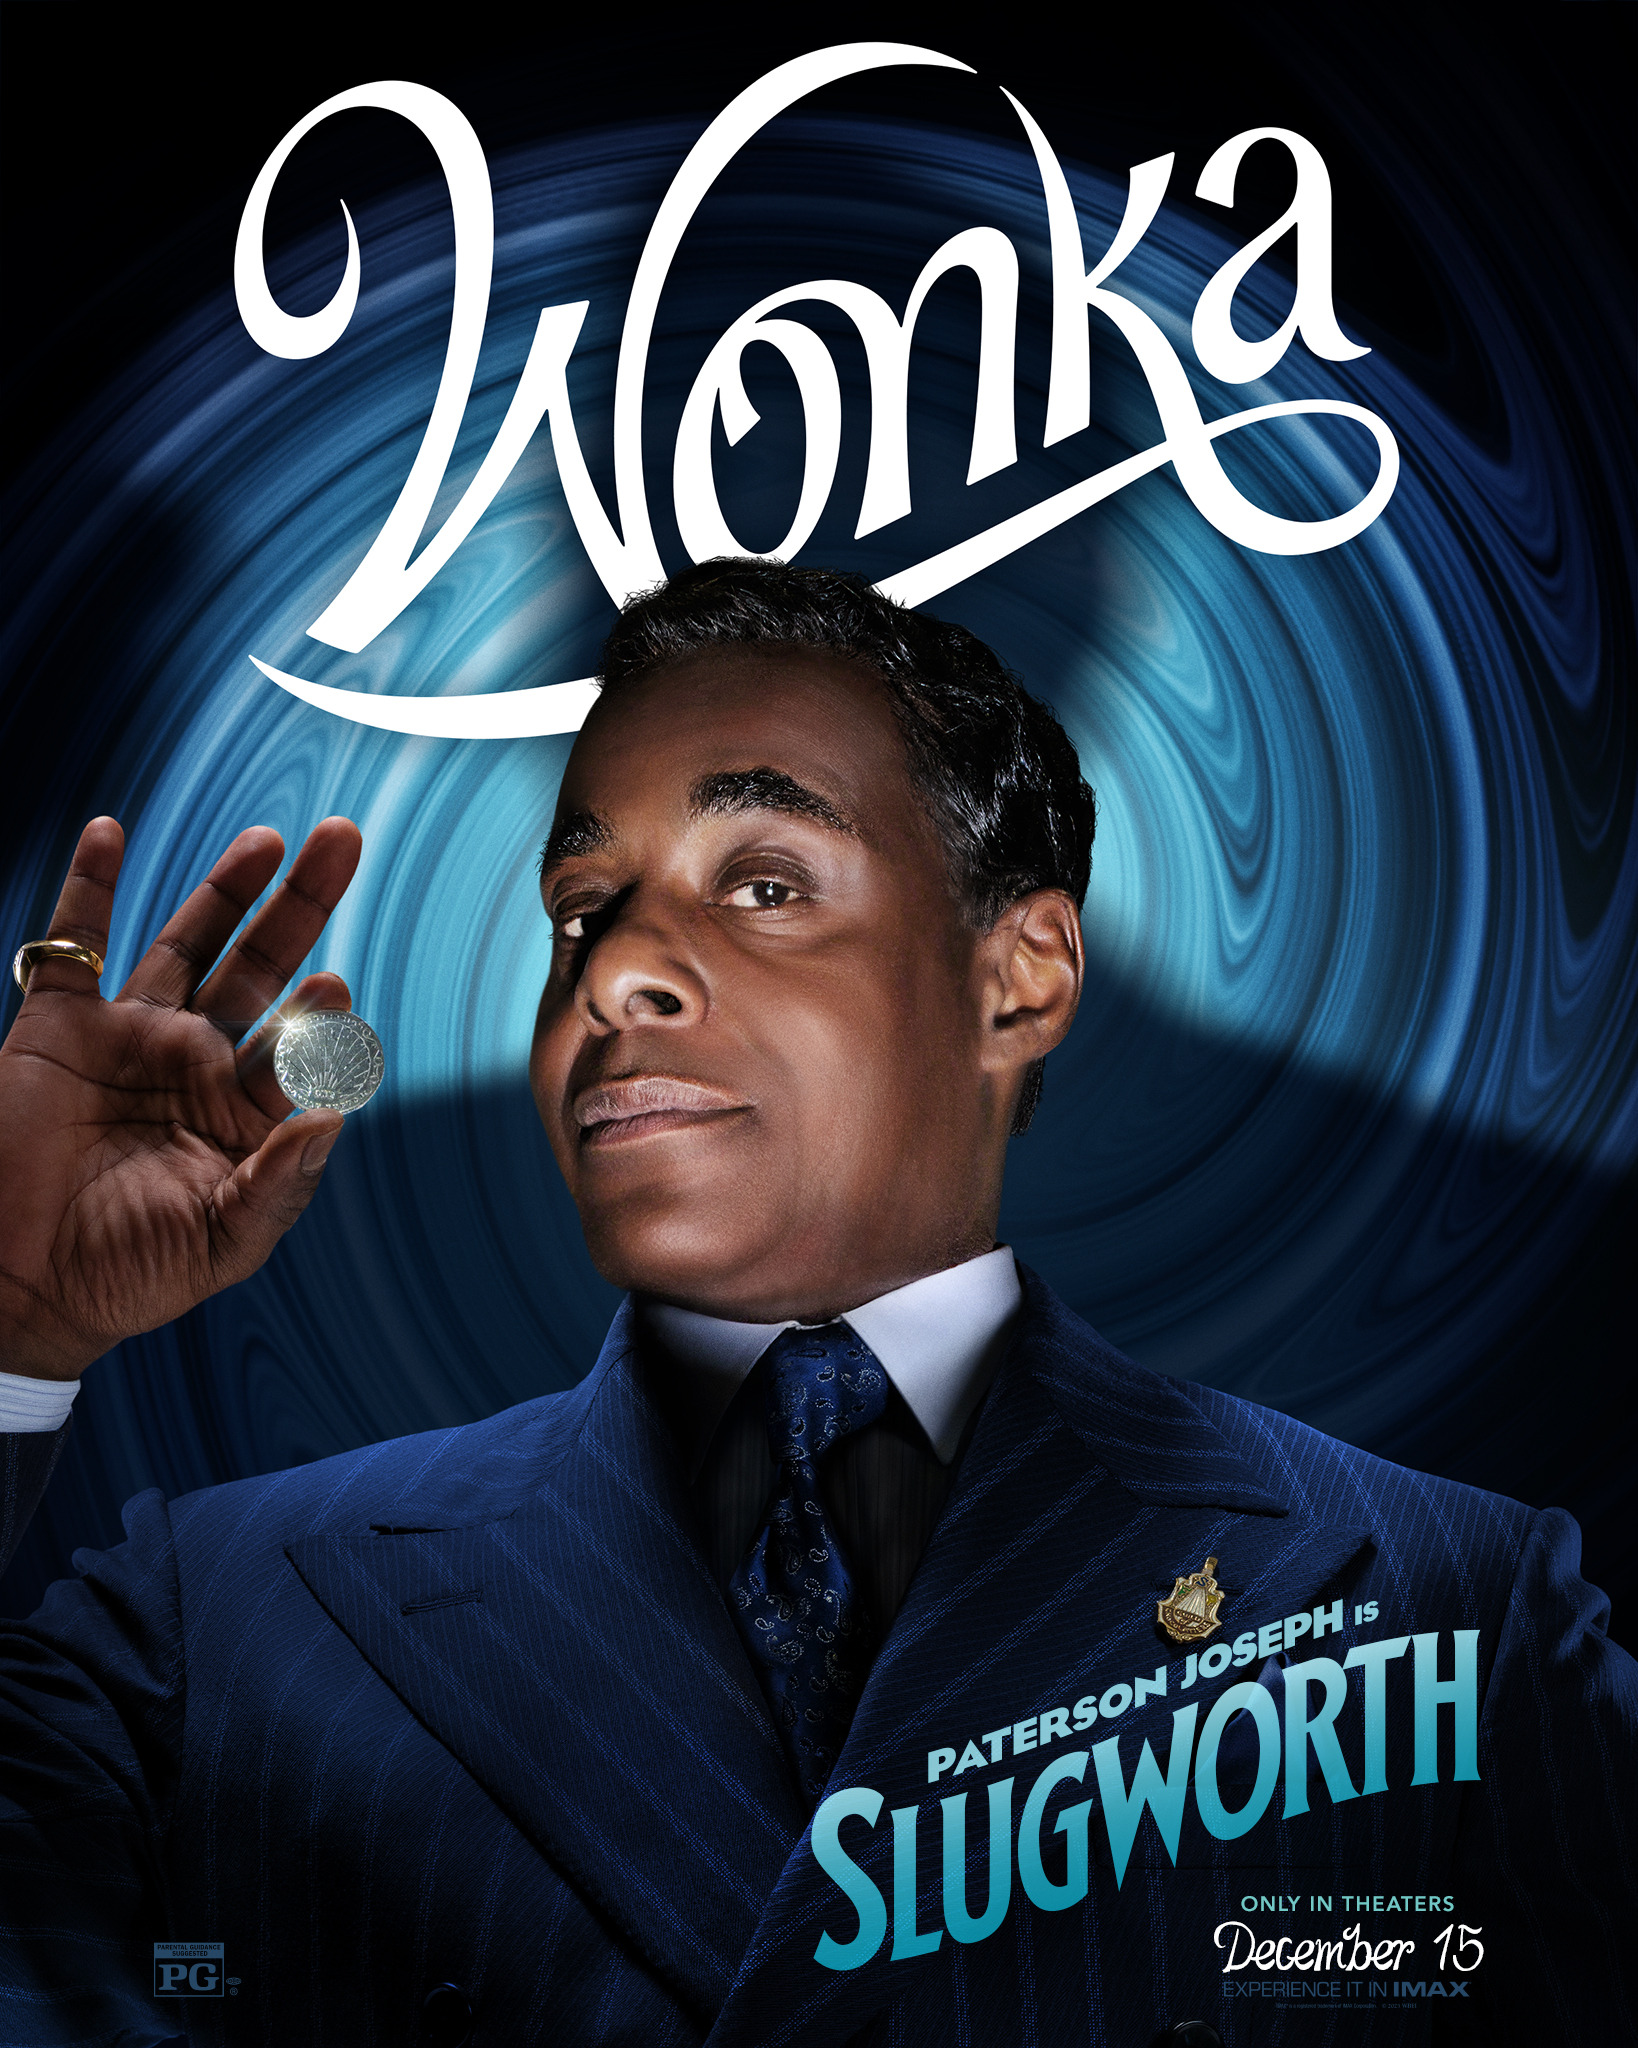 Mega Sized Movie Poster Image for Wonka (#15 of 22)